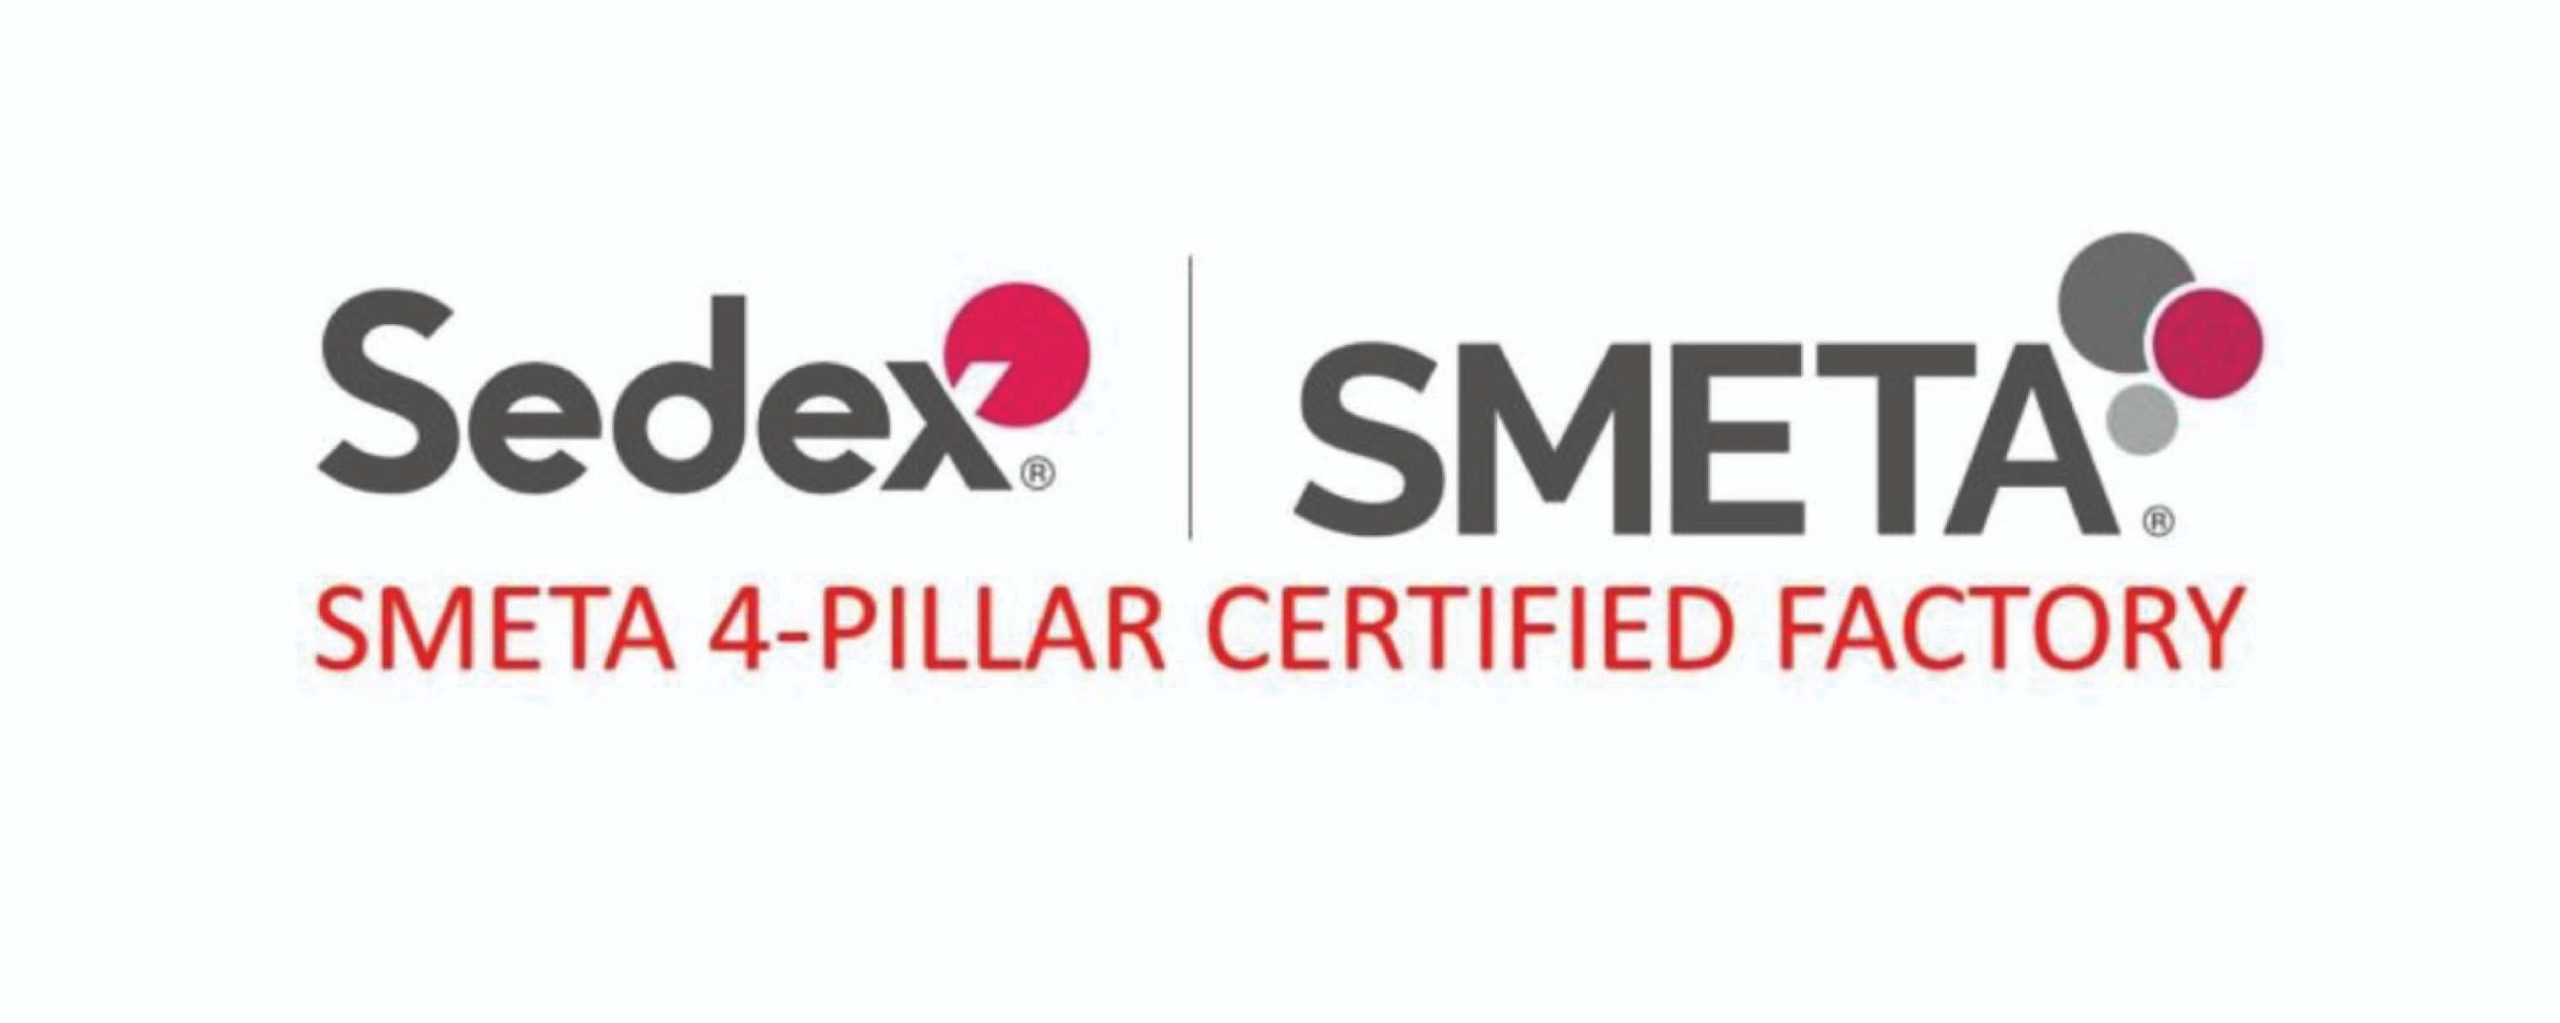 SMETA Sedex Certified Factory Logo